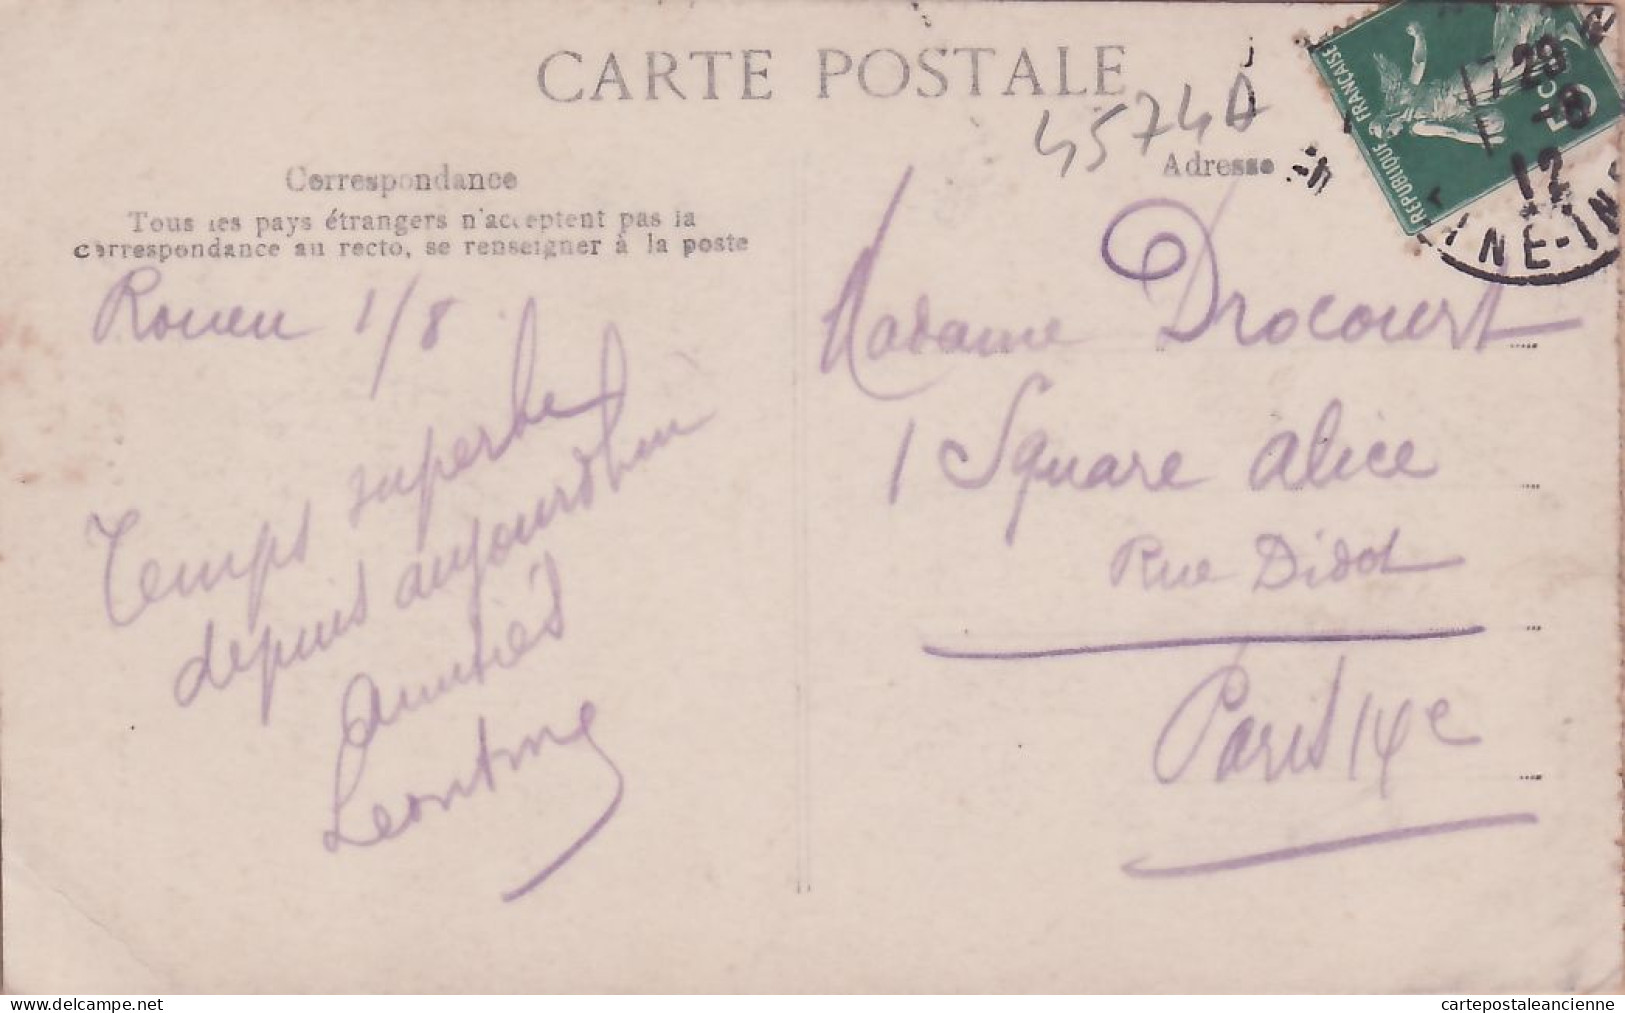 10879 / ROUEN Seine Maritime Cathédrale 01.08.1912 à DROCOURT 1 Square ALICE Rue DIDOT PARIS 14 - Le DELEY 616 - Rouen